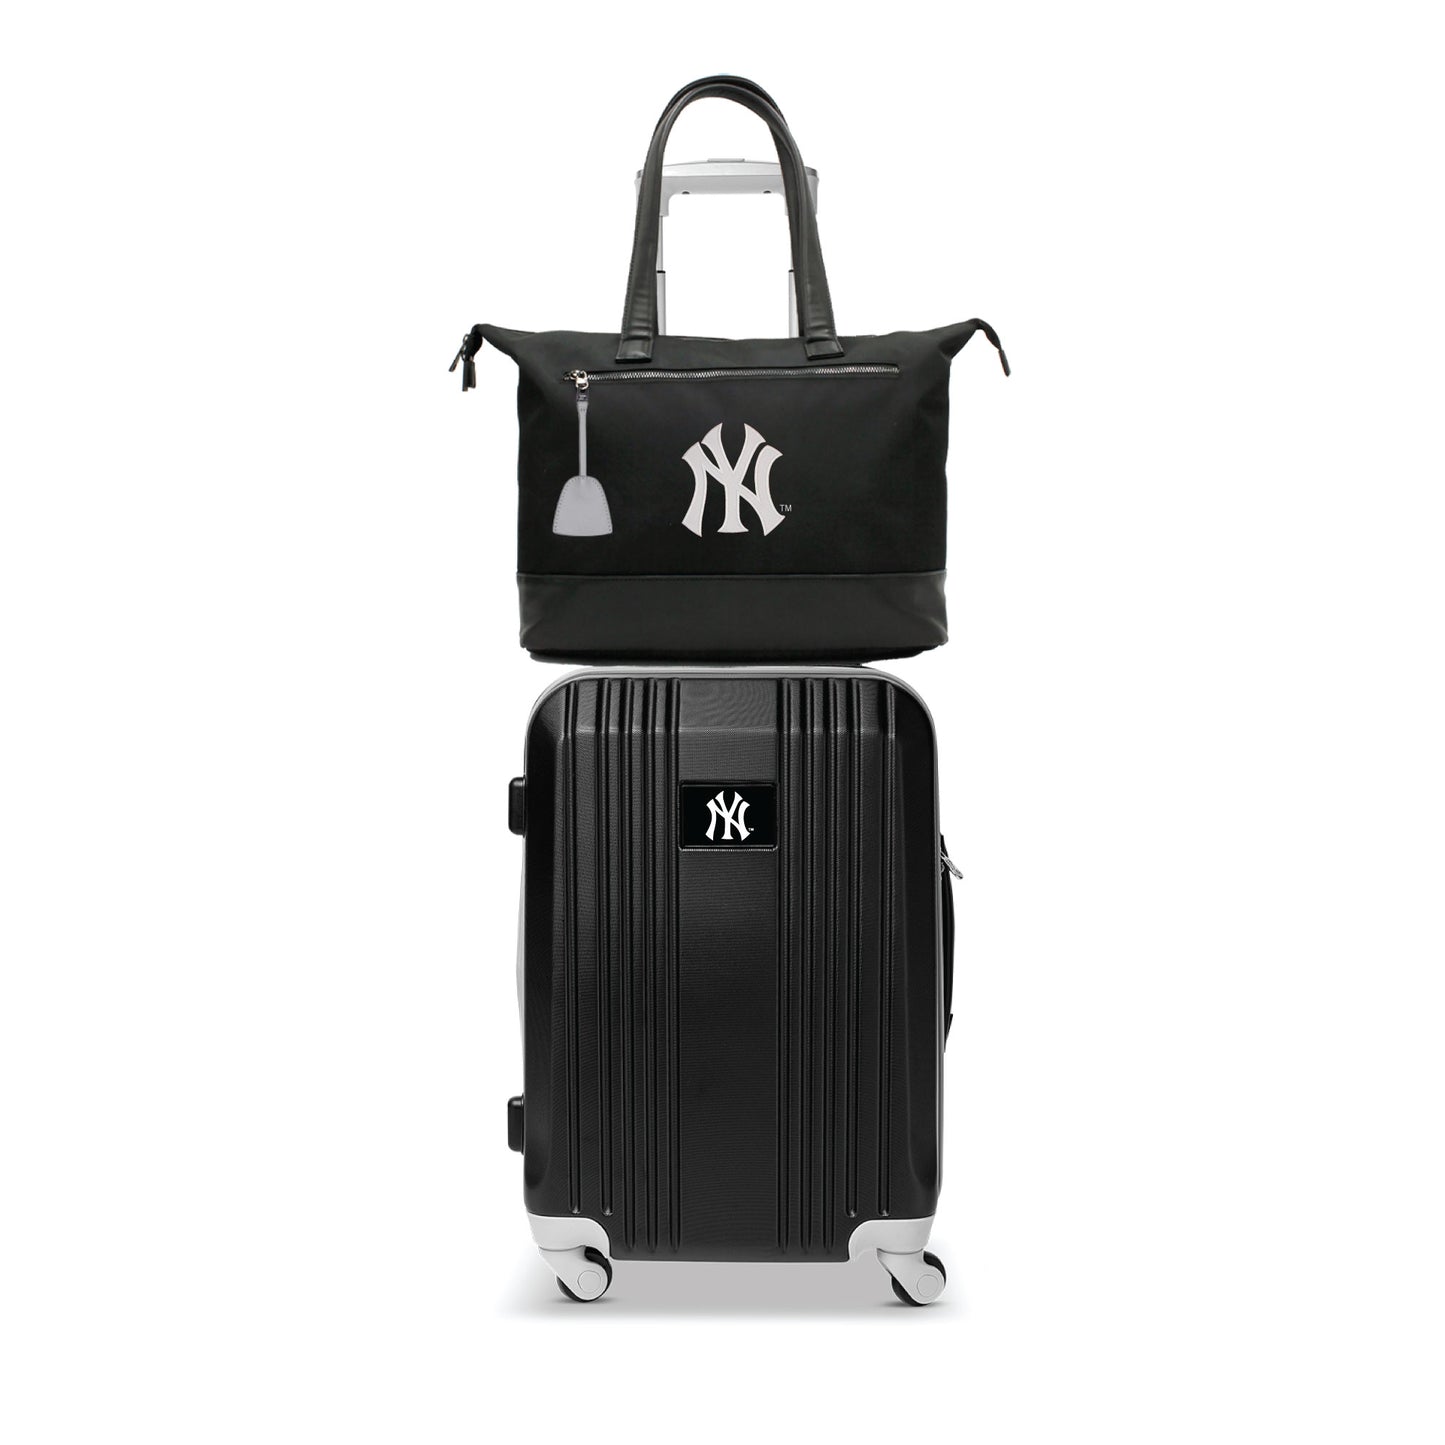 New York Yankees Premium Laptop Tote Bag and Luggage Set